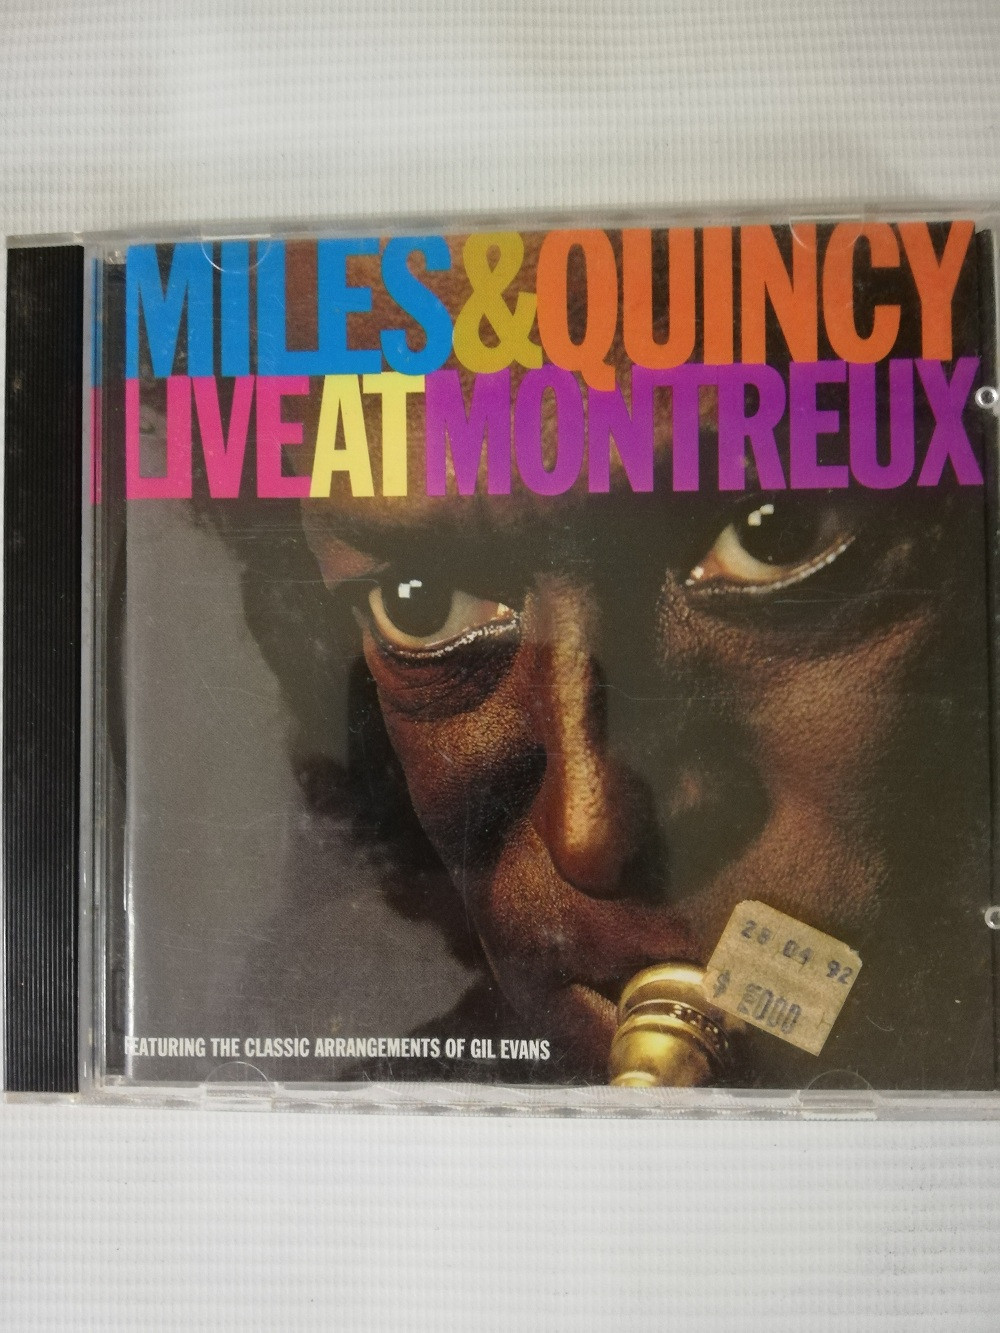 Imagen CD MILES DAVIS & QUINCY JONES - LIVE AT MONTREUX